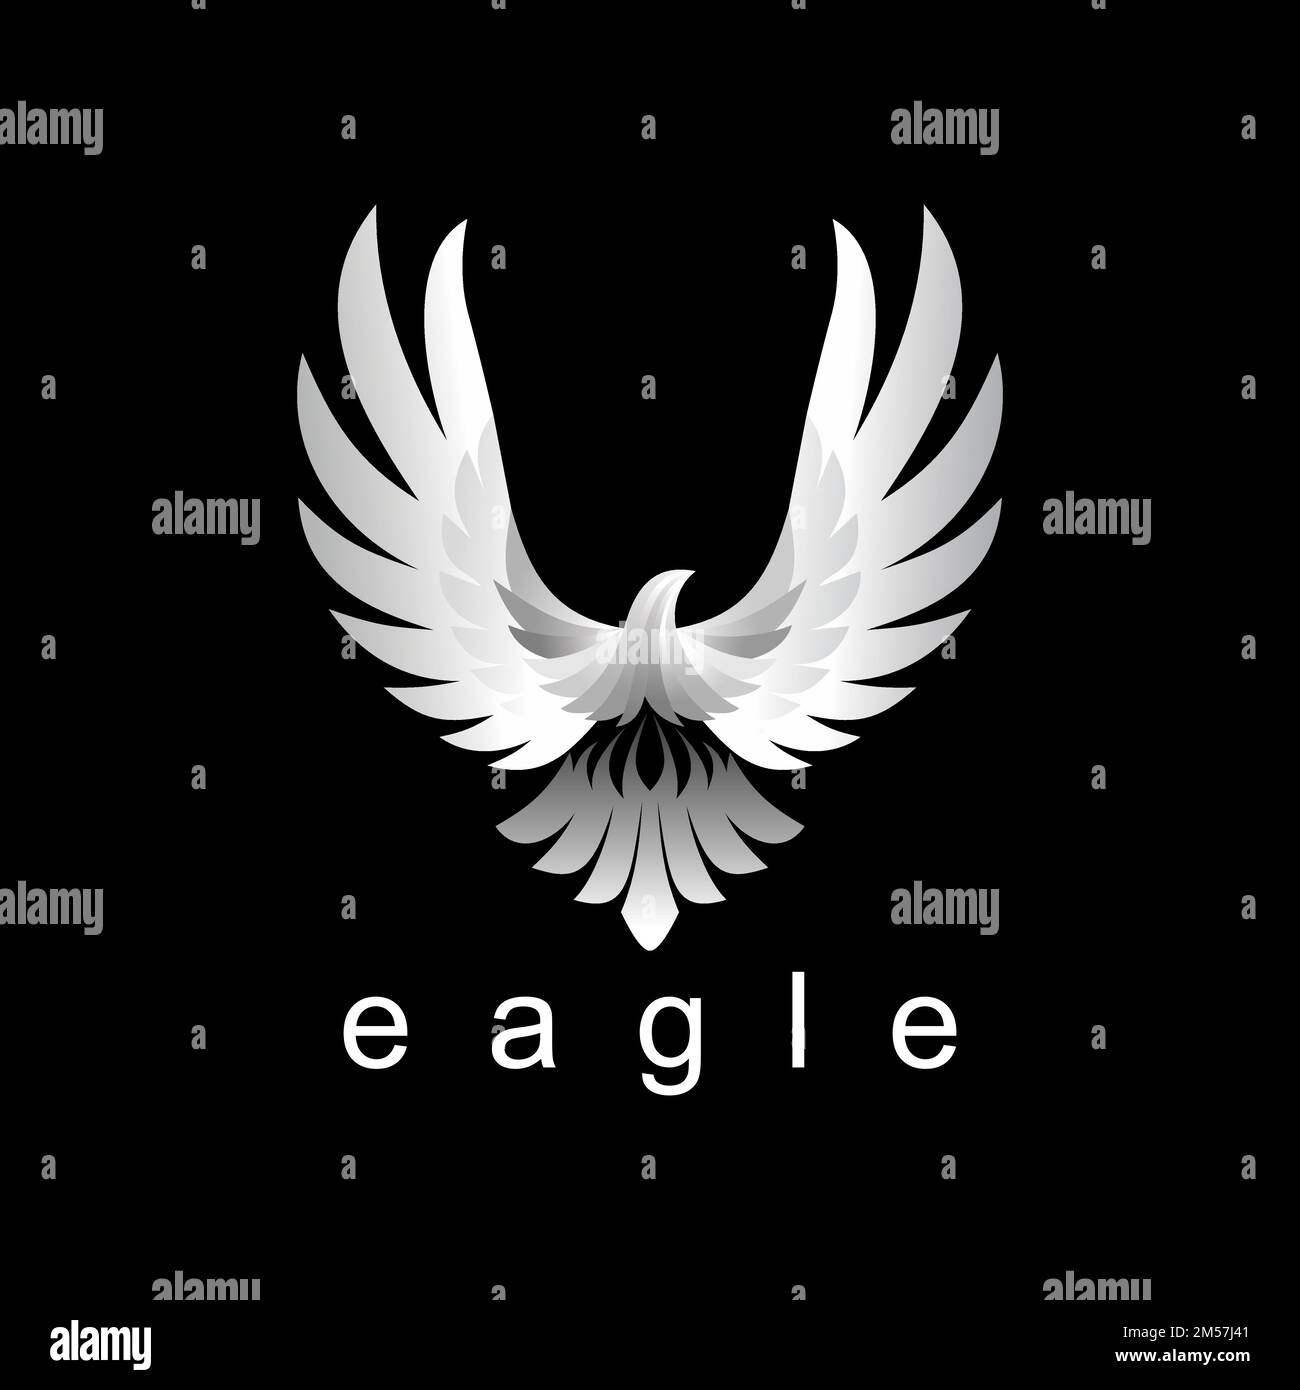 Einzigartiger und einfacher Adler mit attraktiven Farben Grafiksymbol Logo-Design abstraktes Konzept Vektormaterial. Wird als Symbol für Vogel oder Charakter verwendet. Stock Vektor